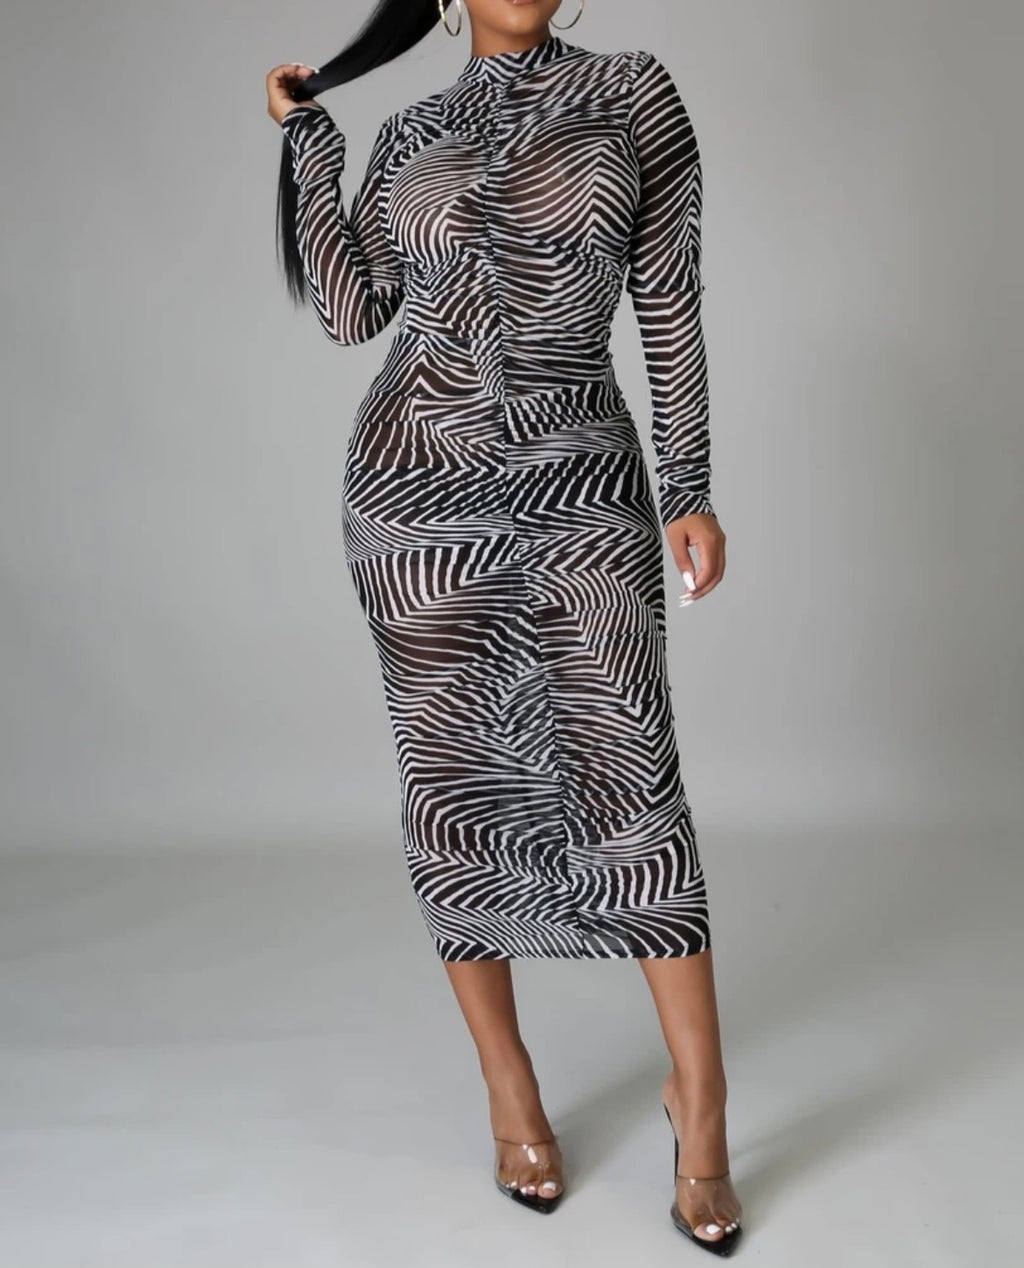 B.Badazz™️Mesh Zebra Dress